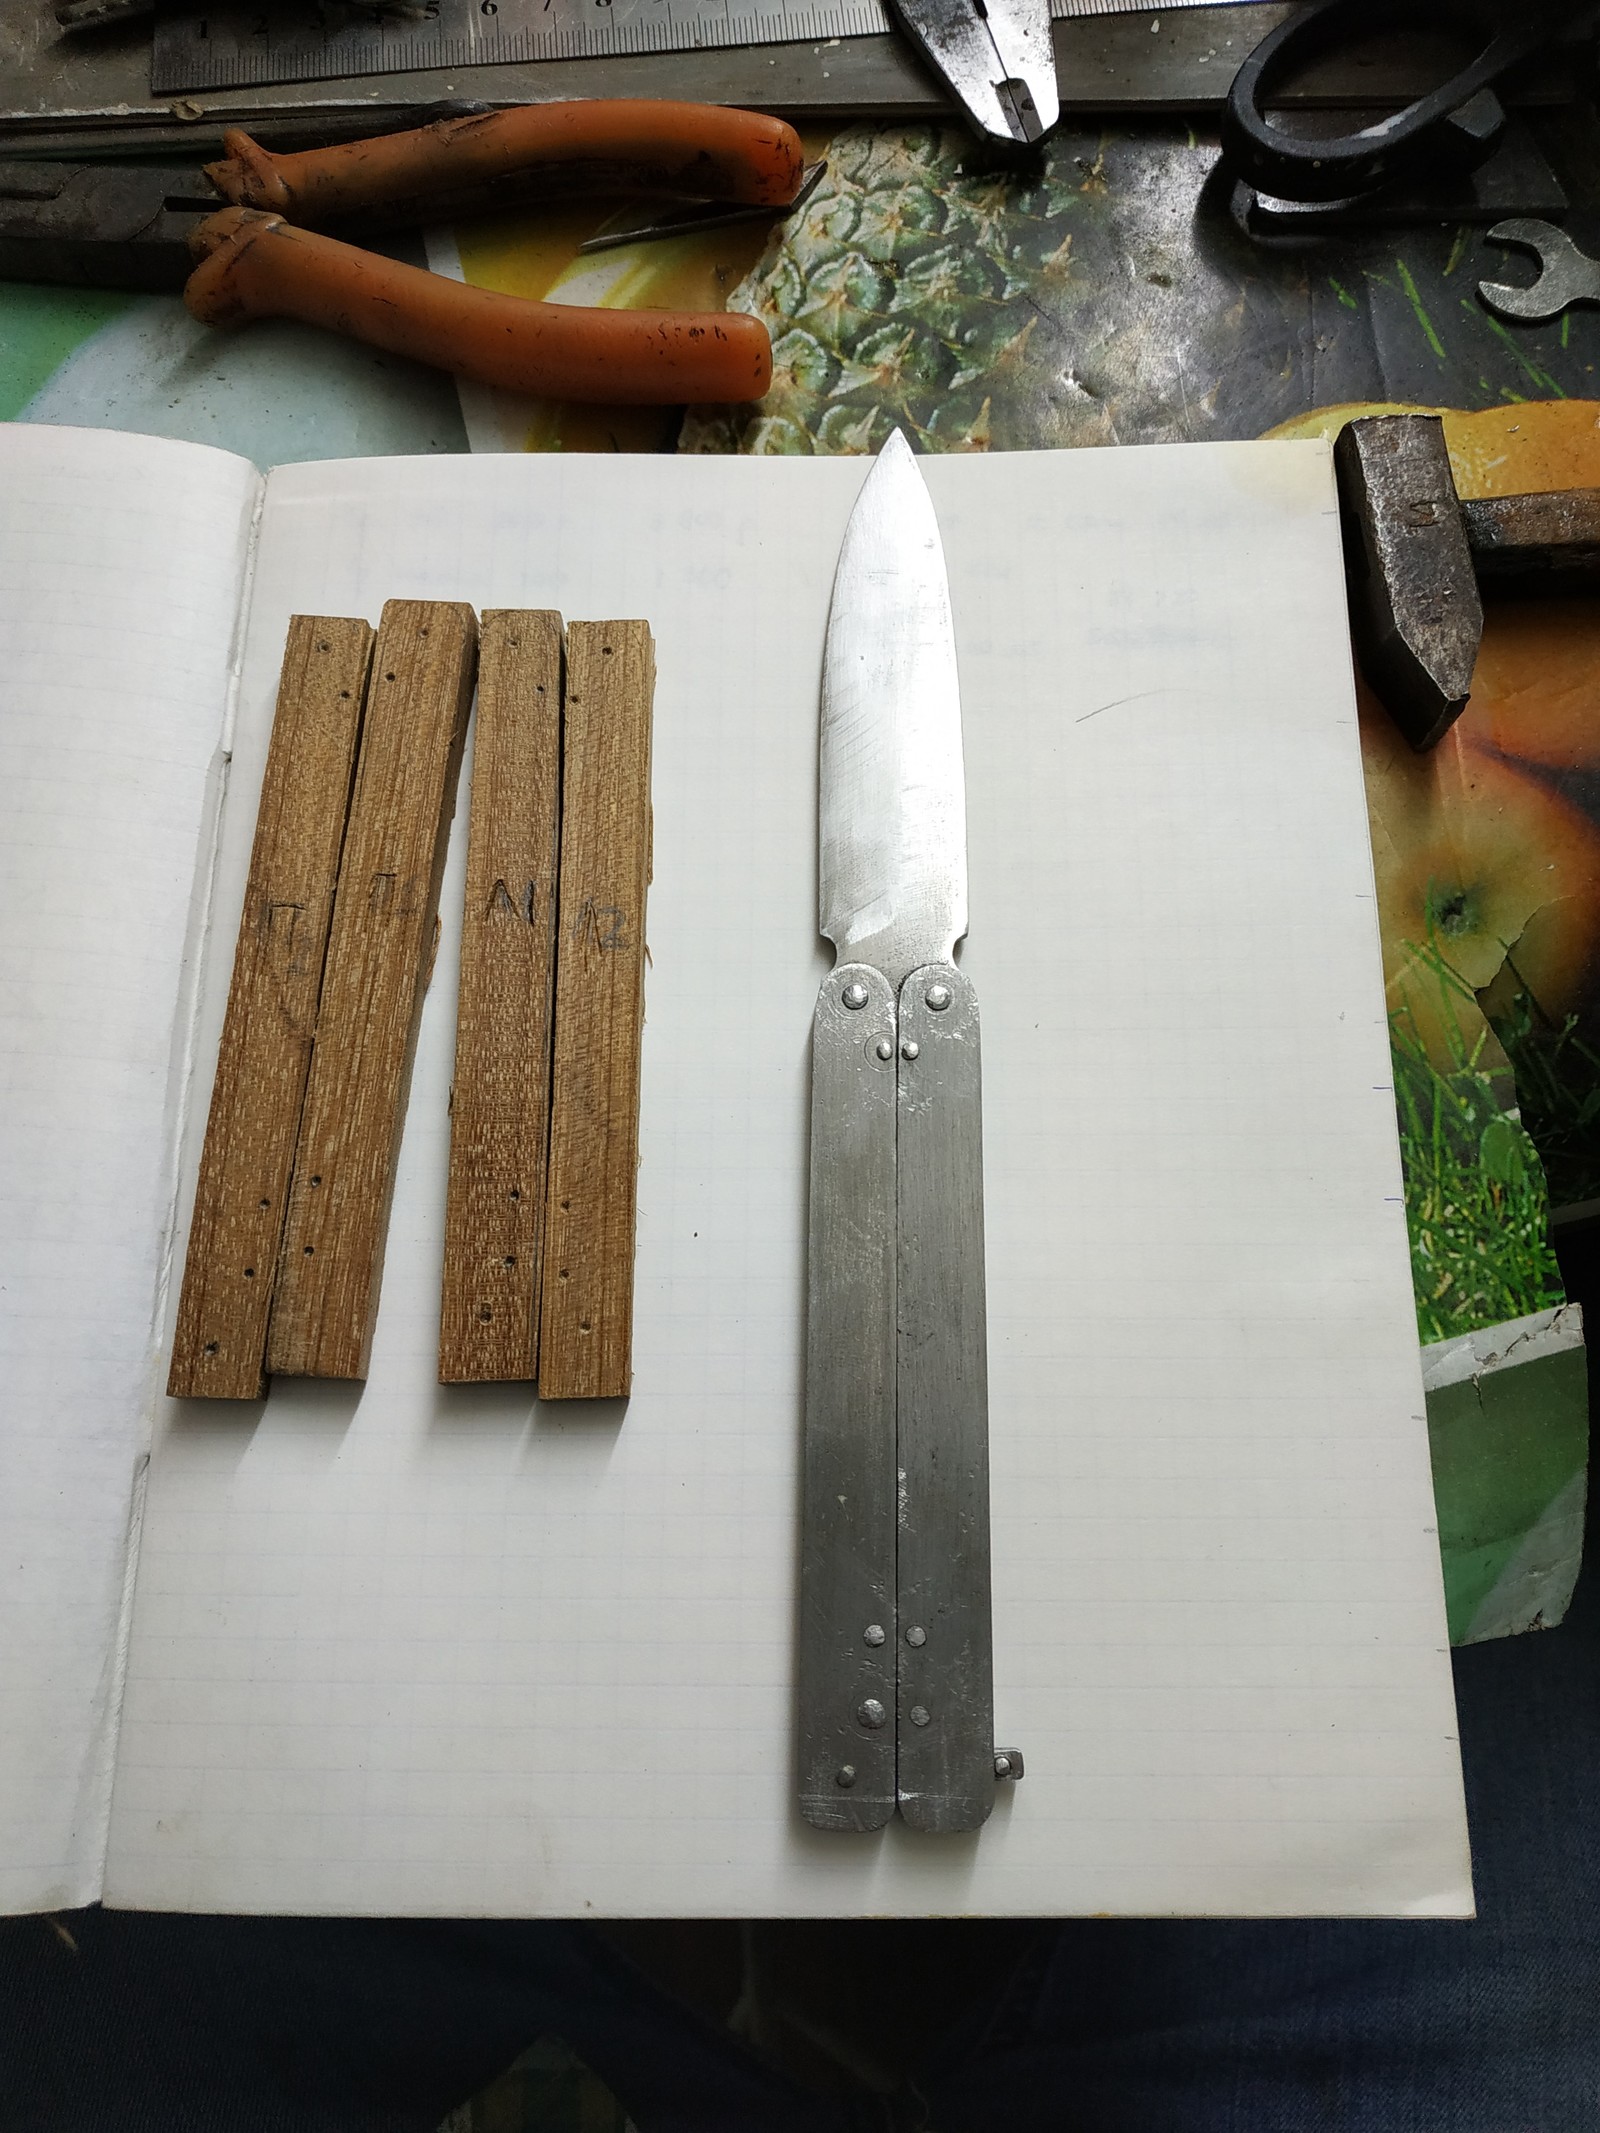 Самодельный нож, изготовление ножа из подручных материалов в домашних условиях. Часть 2.